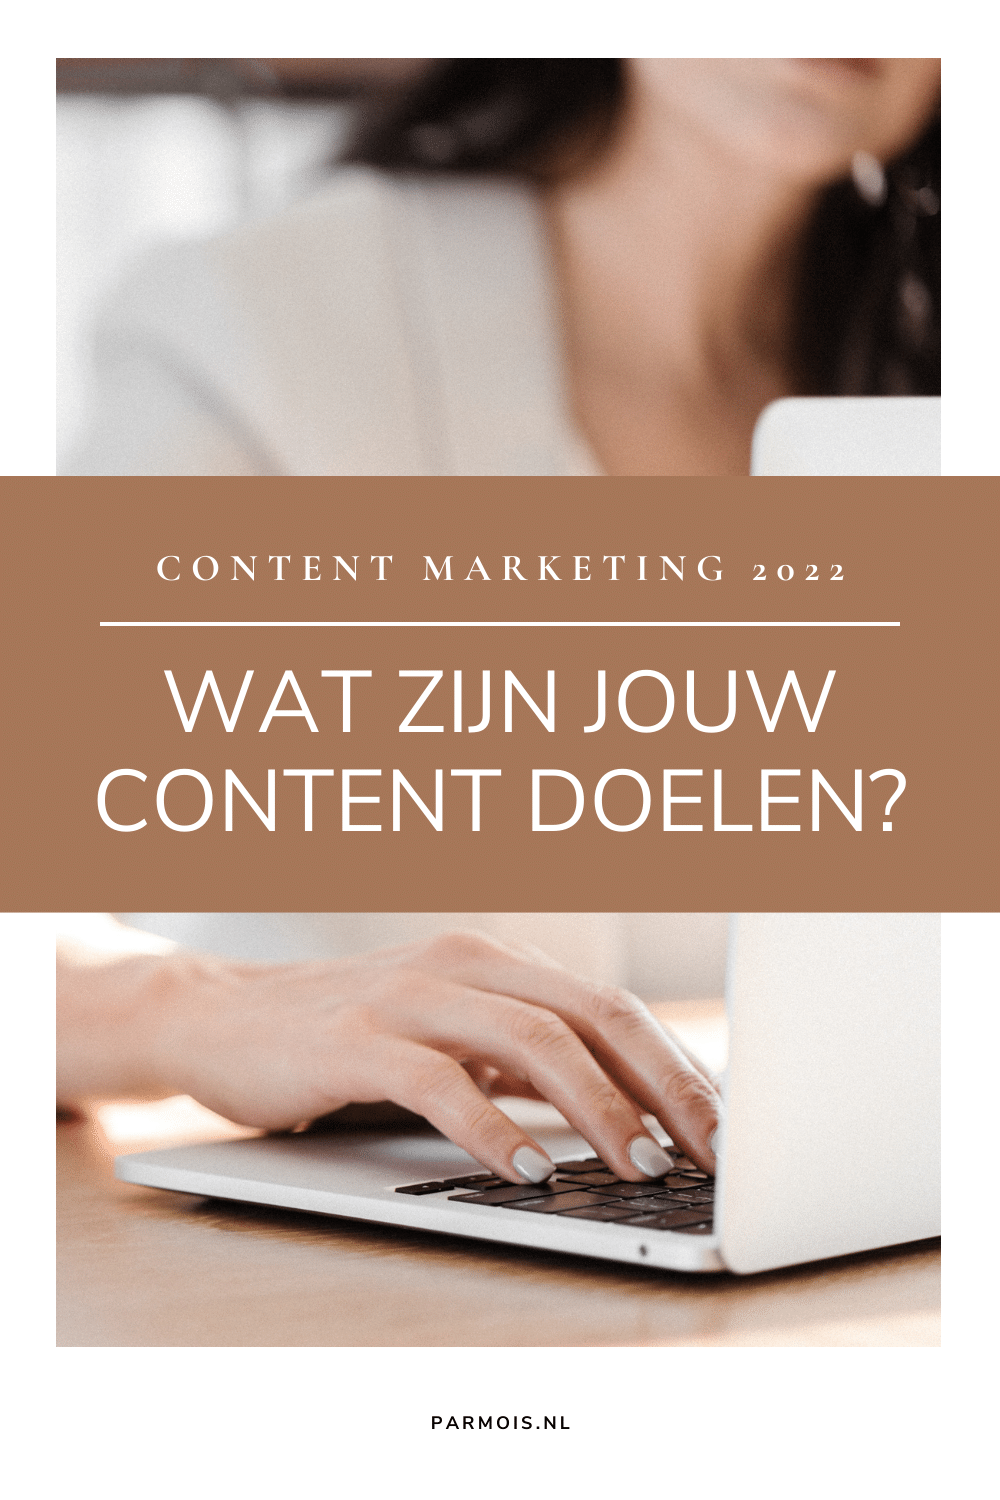 Content marketing 2022: goede voornemens